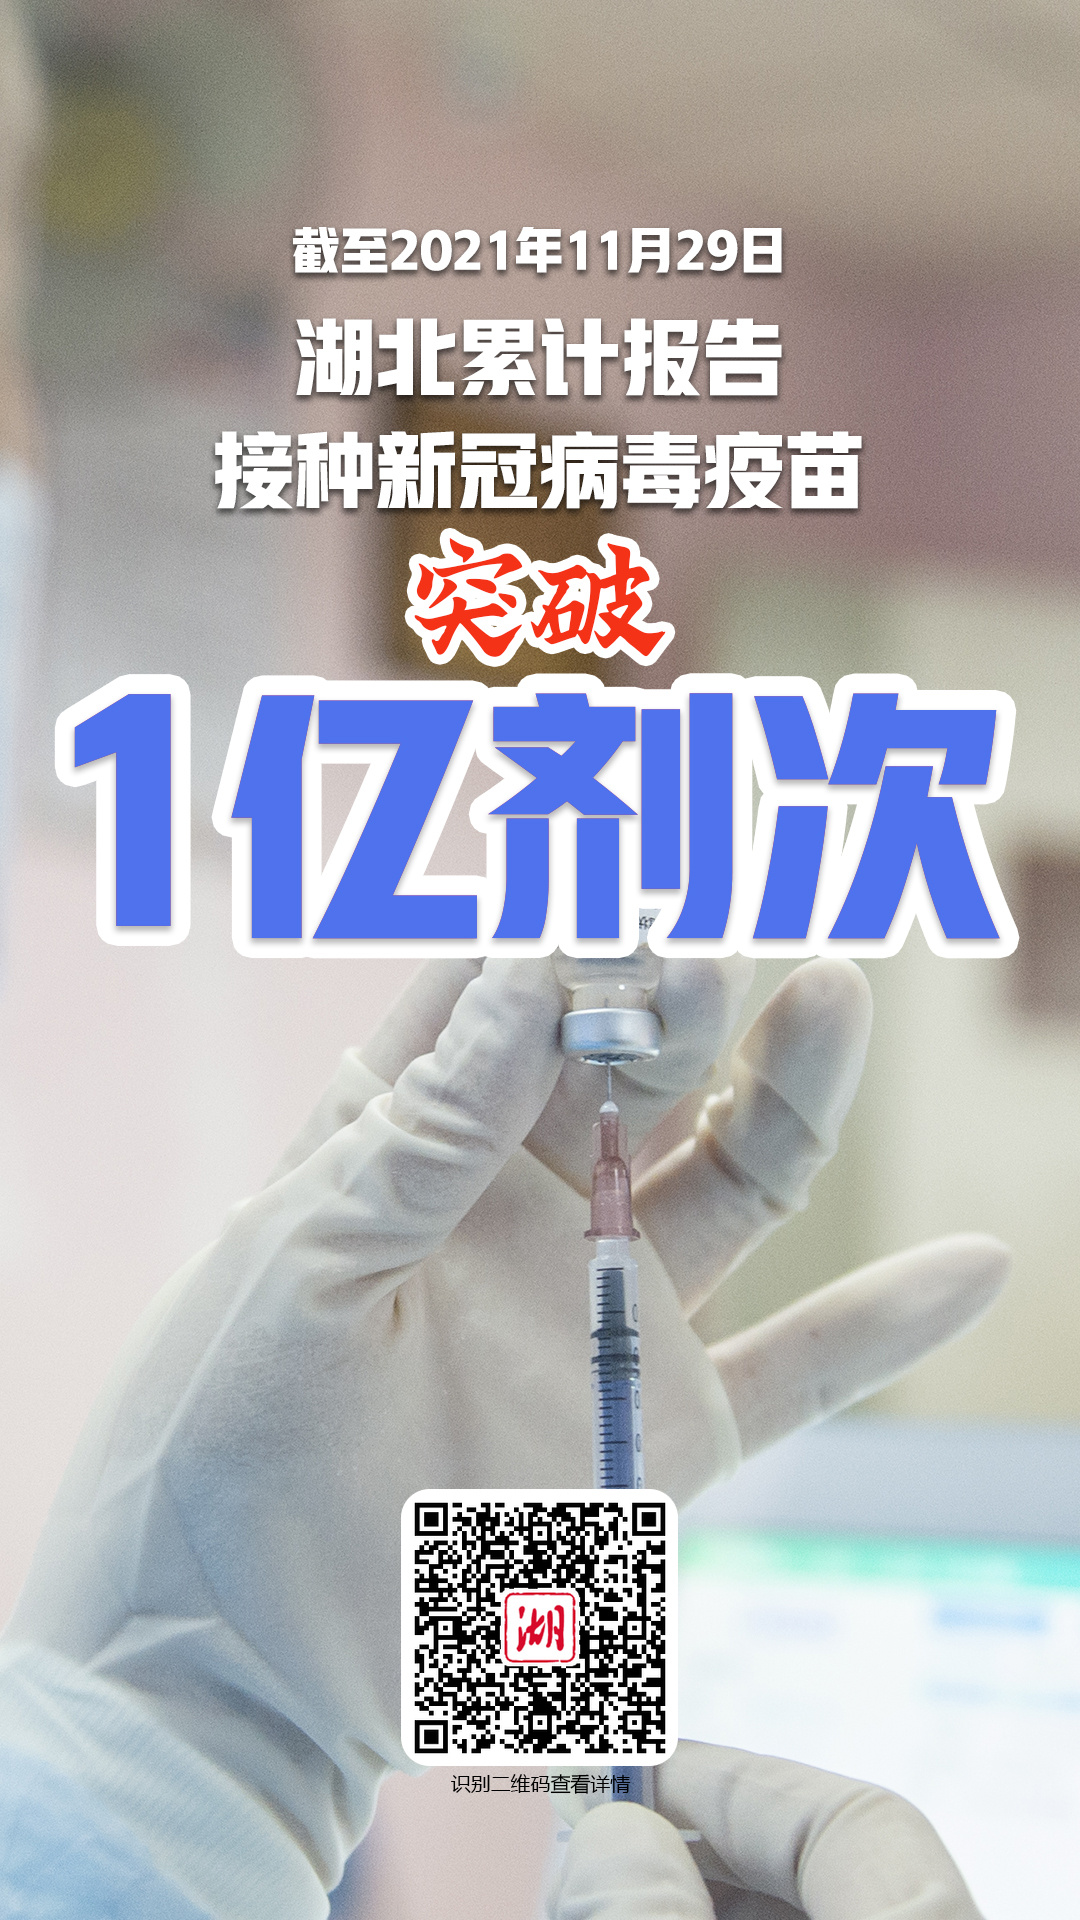 湖北省新冠病毒疫苗接种突破1亿剂次 全力筑建人群免疫屏障